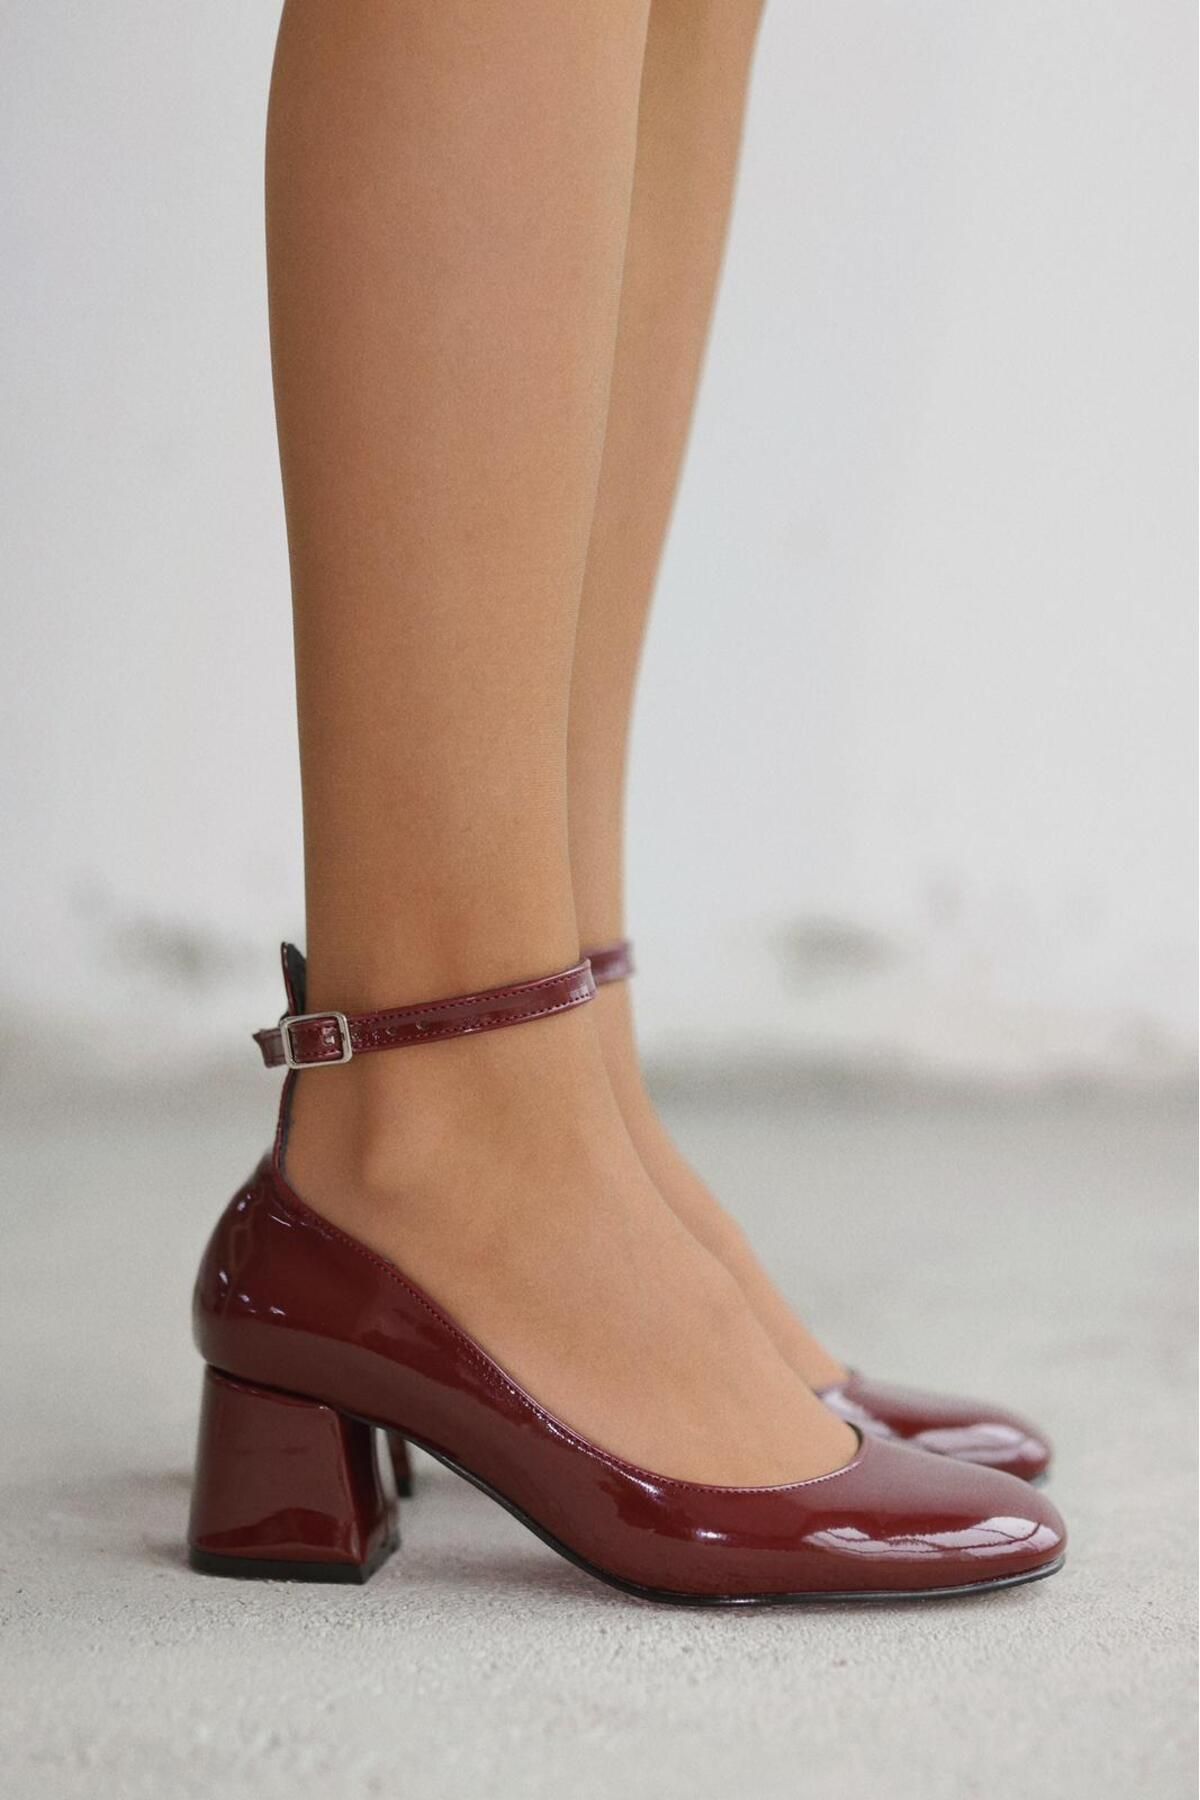 selinshoes Kısa Topuklu Yuvarlak Burun Kadın Topuklu Ayakkabı- BORDO